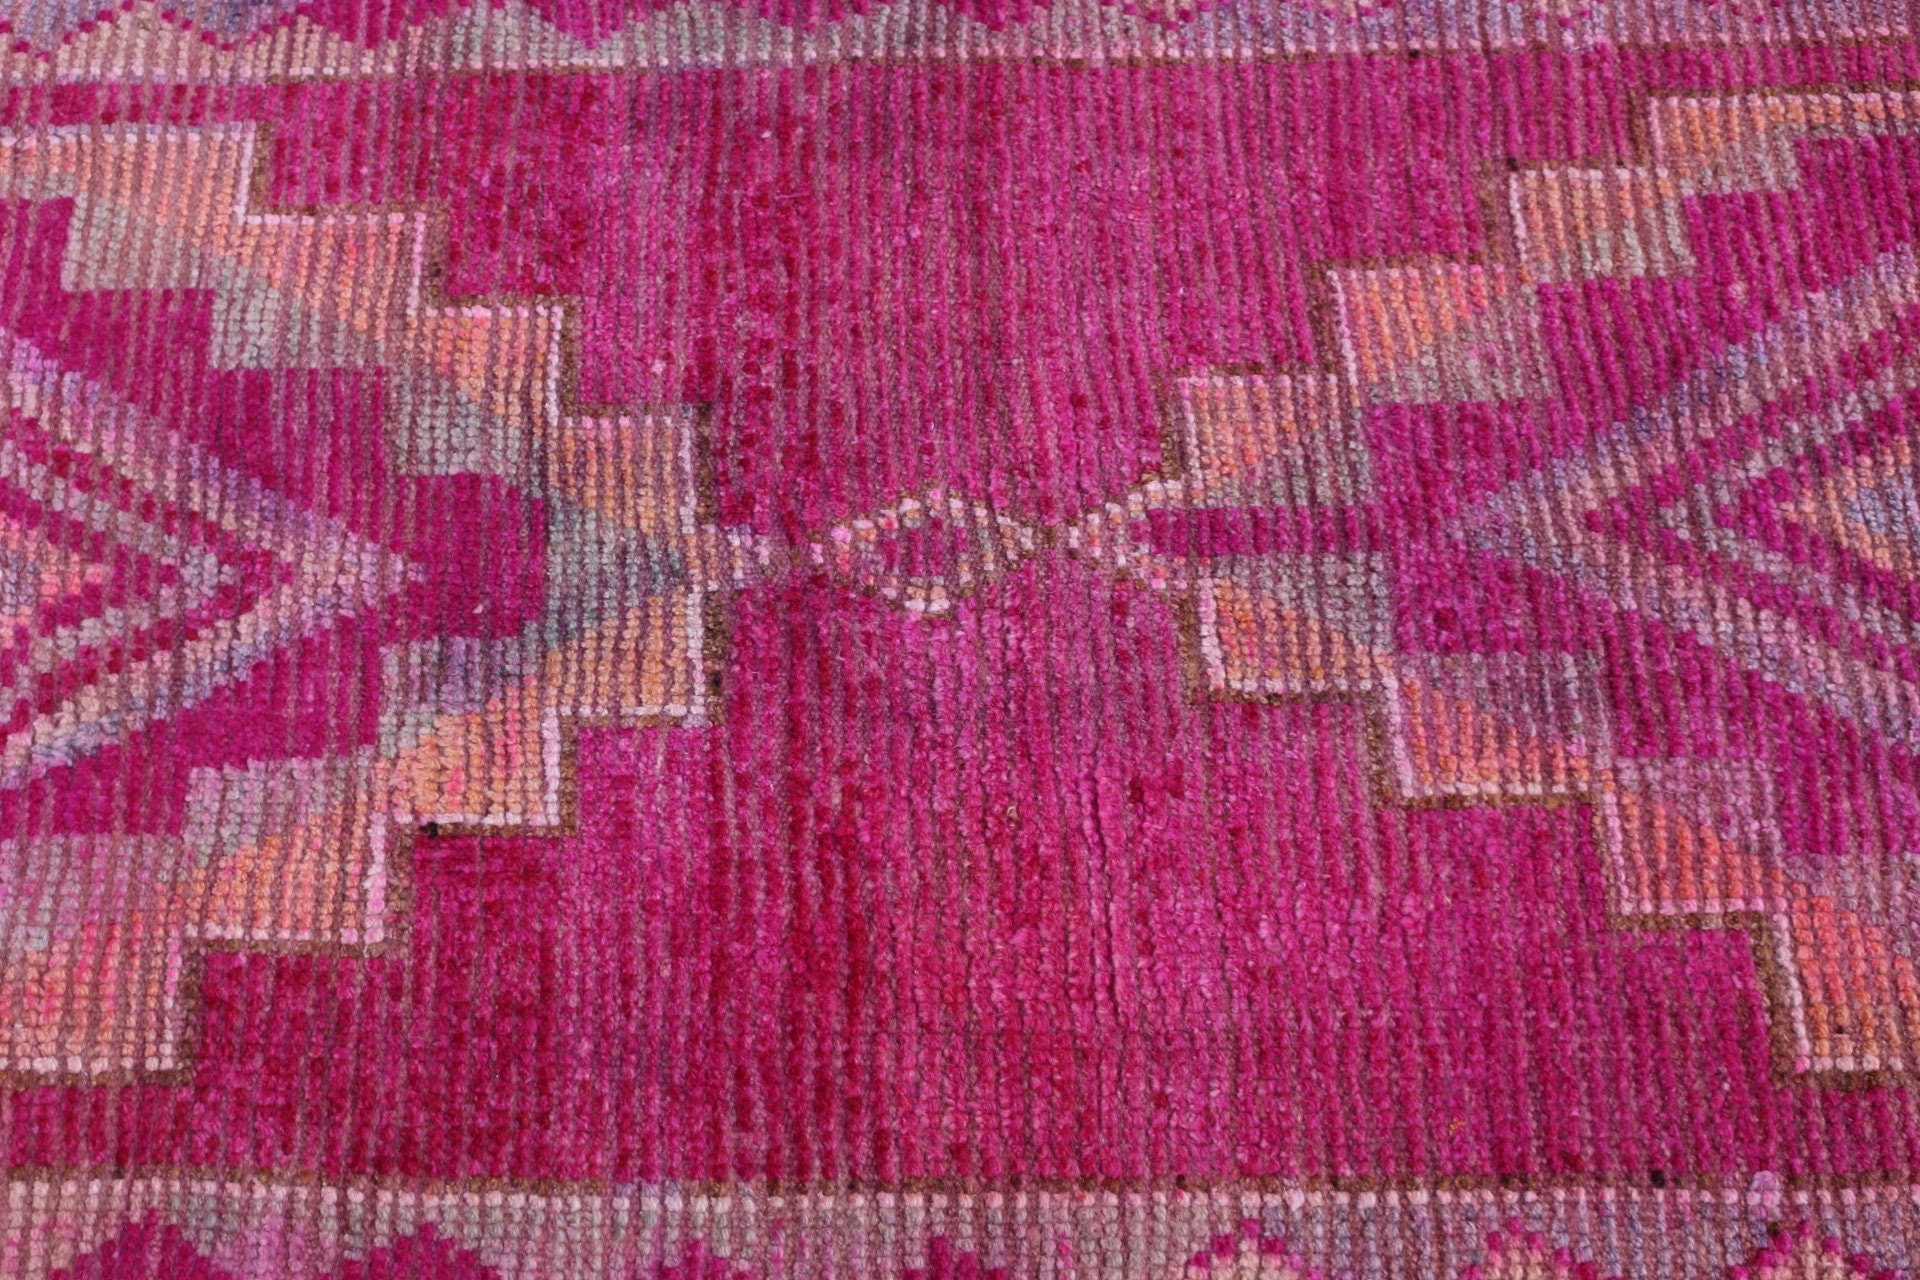 Wool Rug, 2.8x10.4 ft Runner Rugs, Stair Rug, Pale Rug, Turkish Rug, Vintage Rug, Pink Antique Rug, Rugs for Runner, Kitchen Rug, Floor Rug